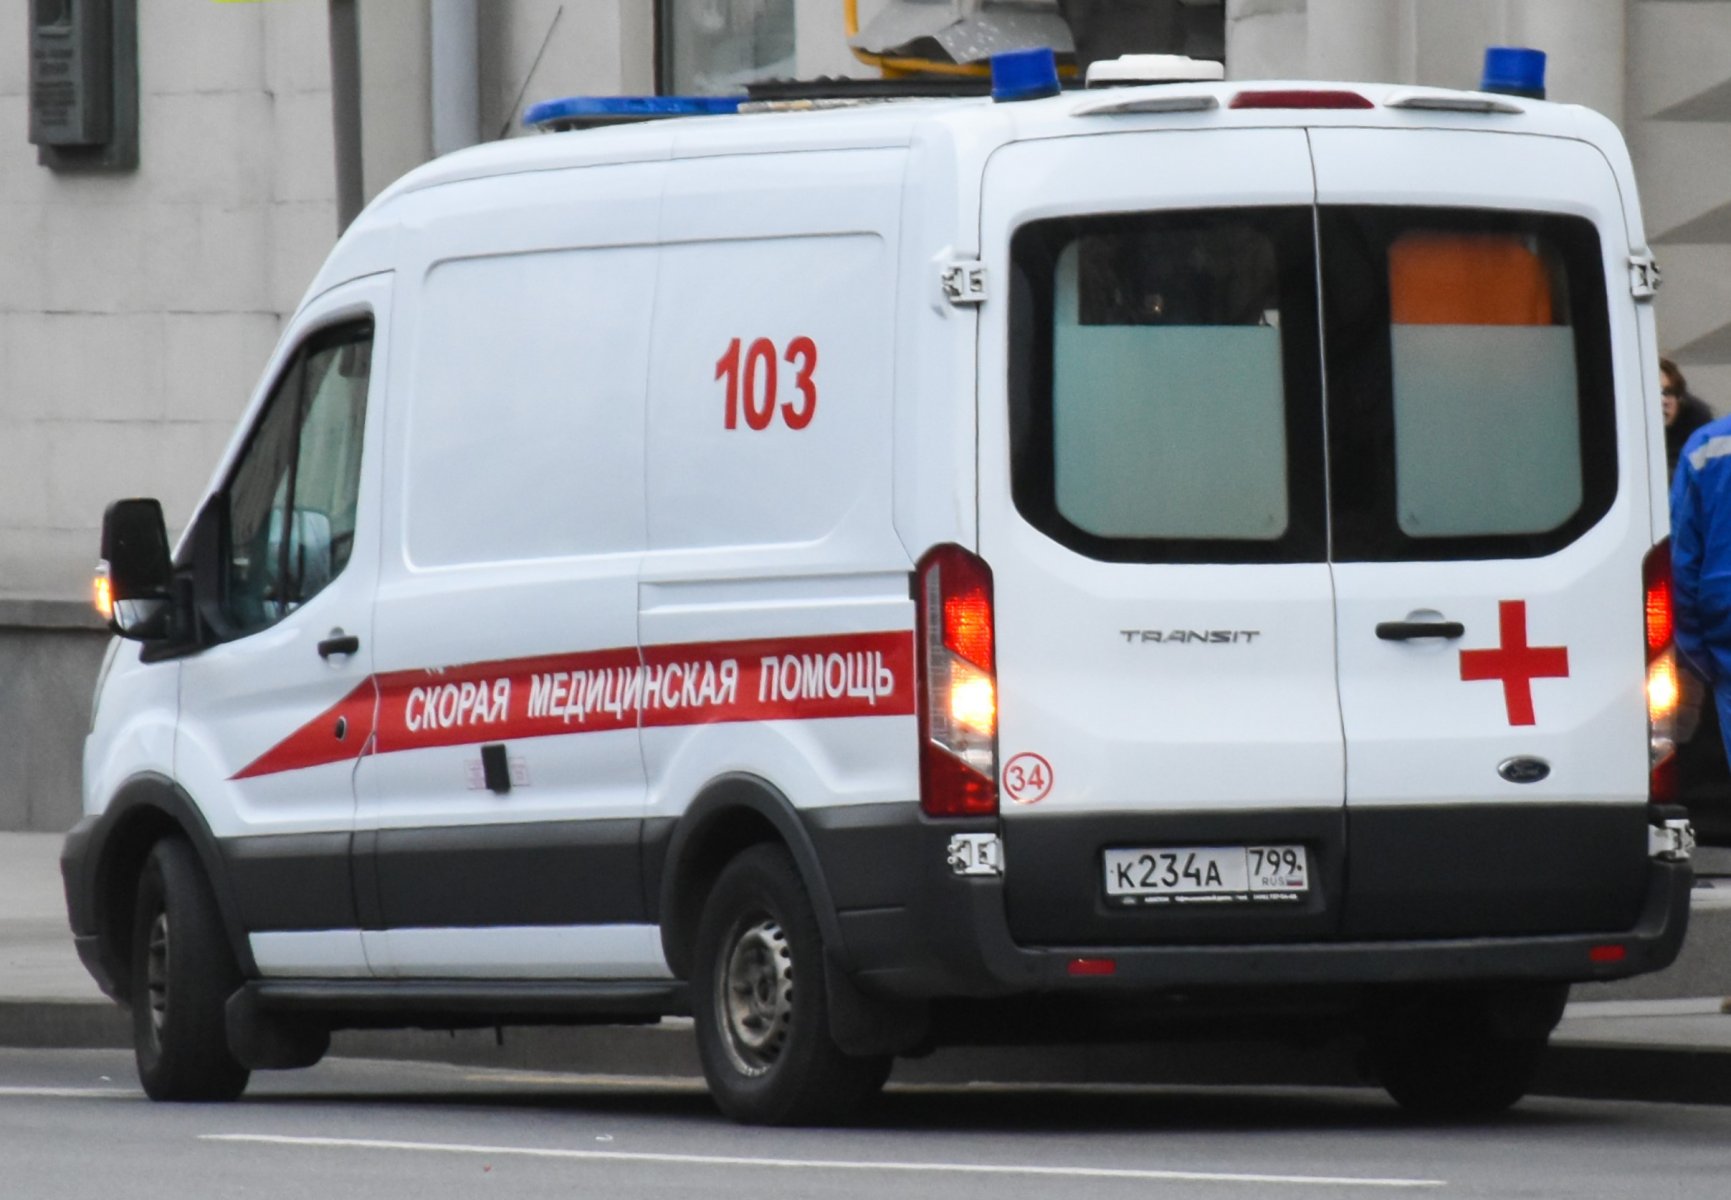 СМИ: в Москве нашли тело генерал-майора милиции в отставке с огнестрельным ранением